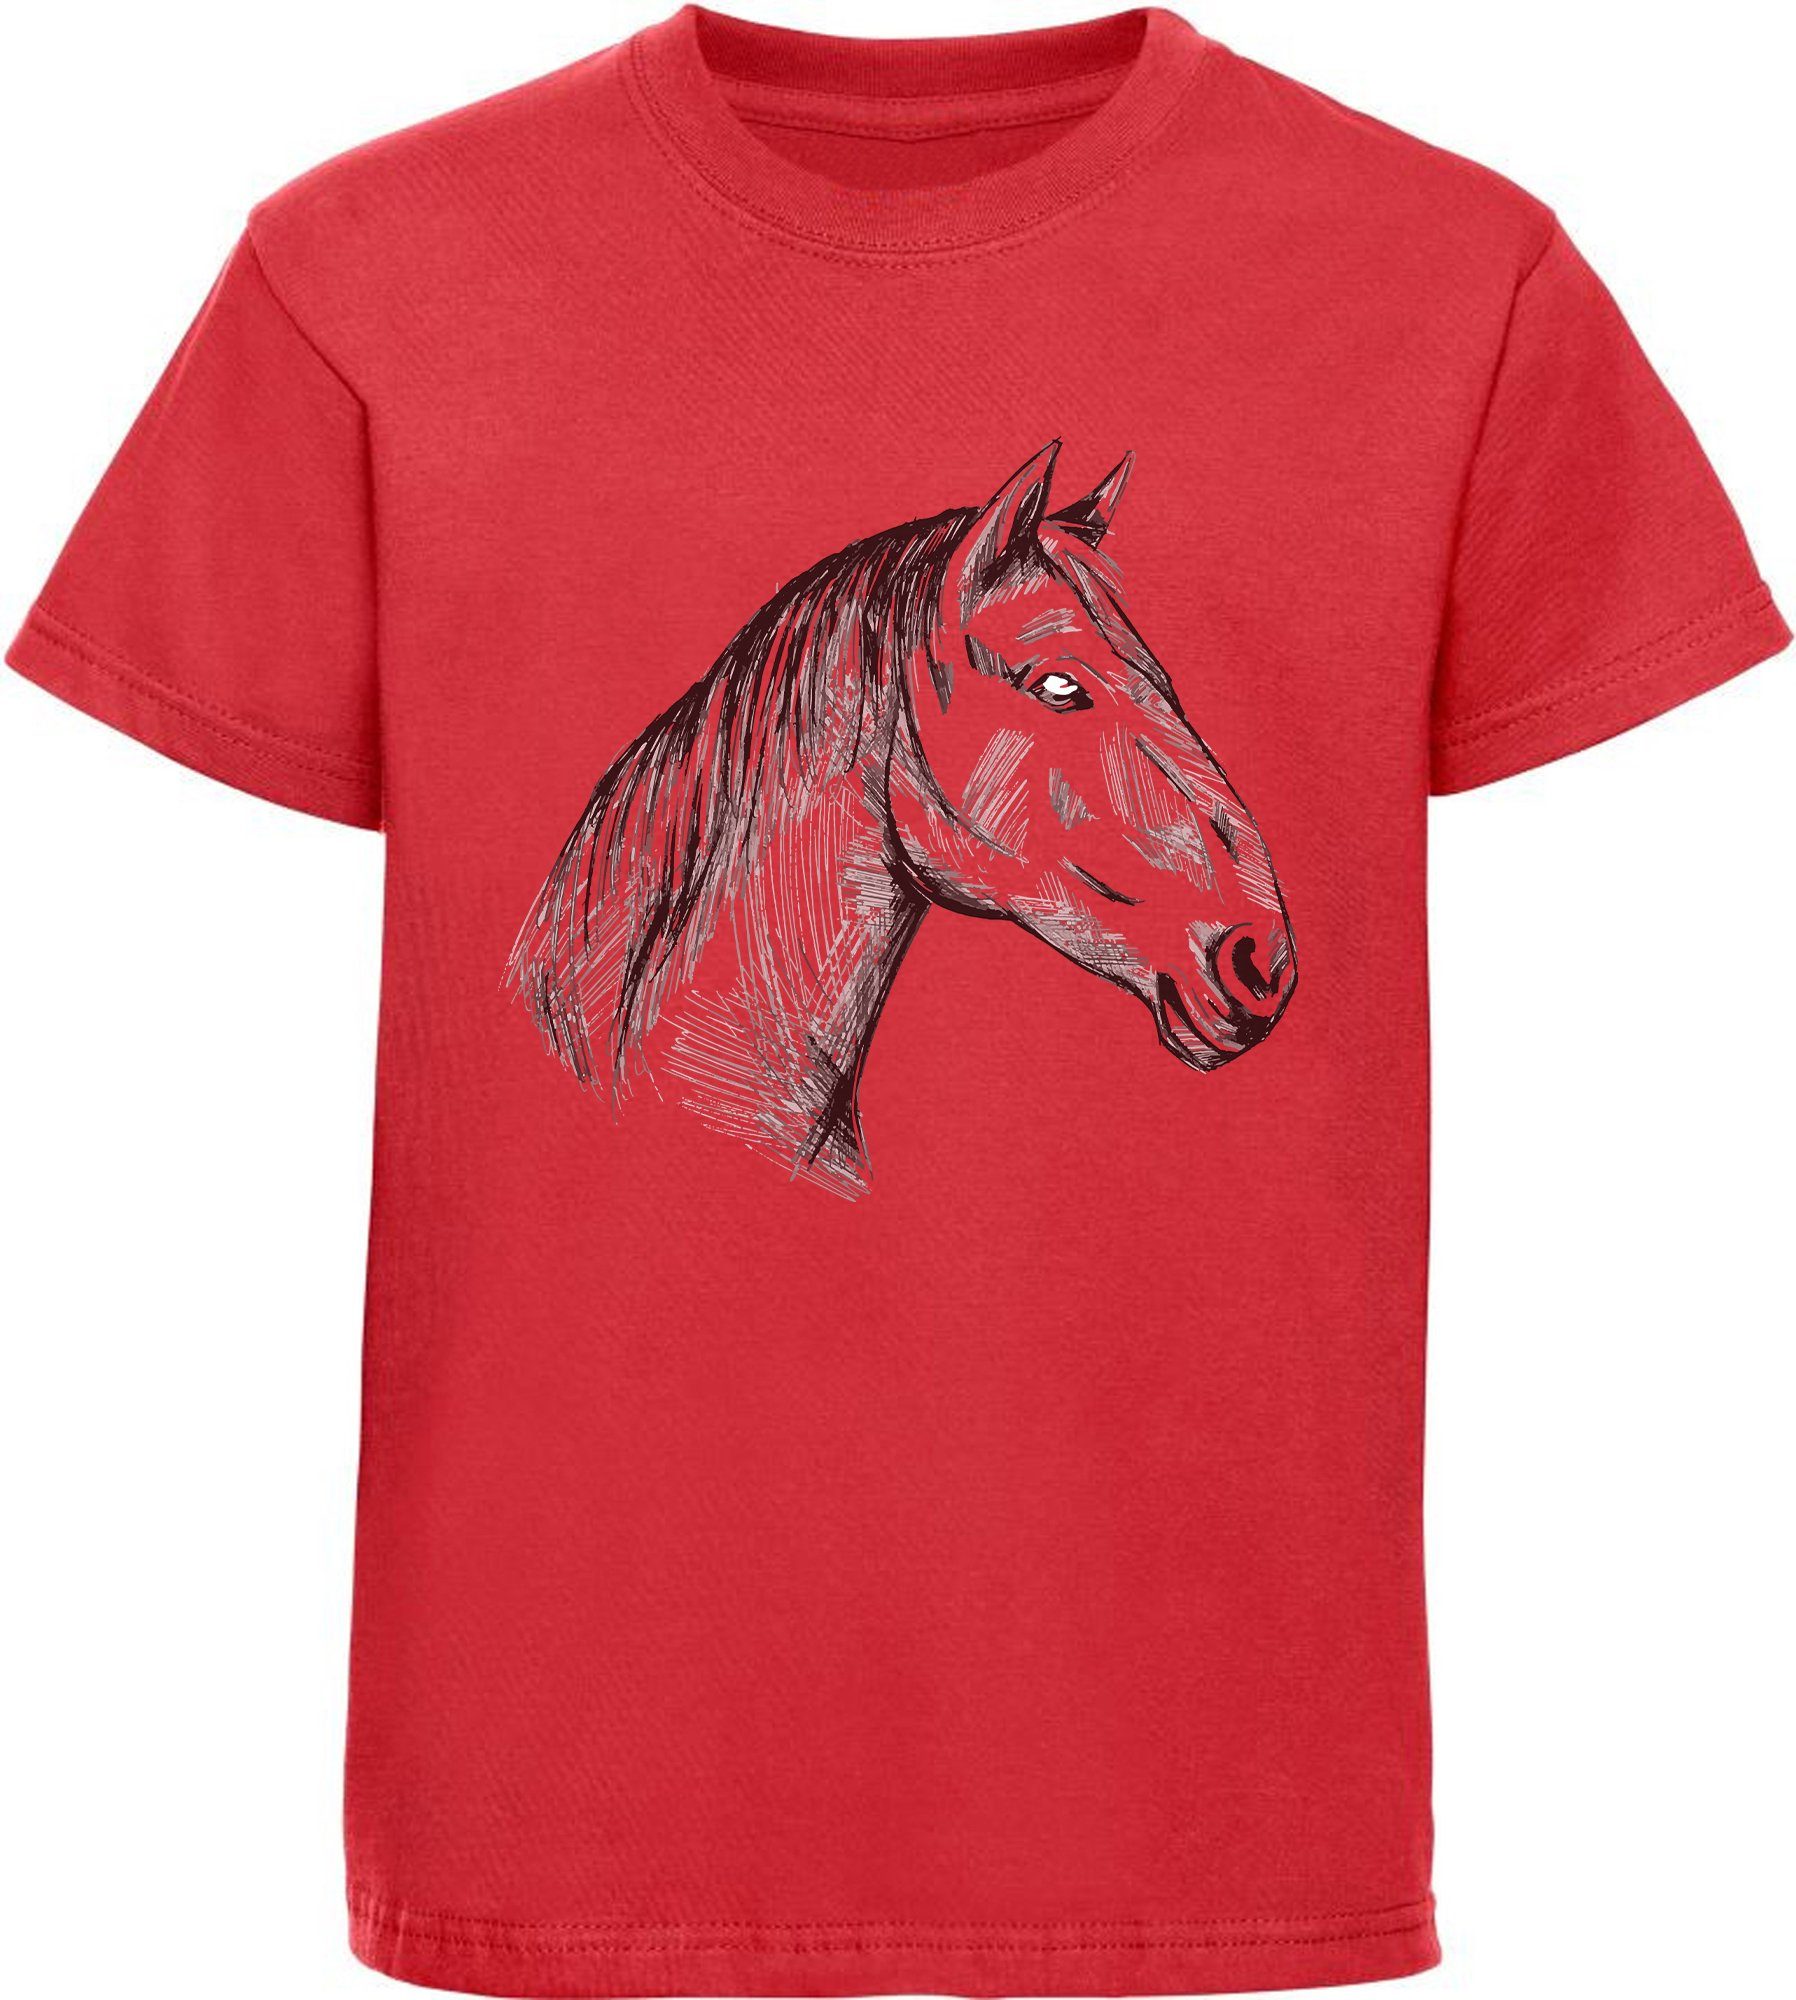 MyDesign24 Print-Shirt bedrucktes Mädchen T-Shirt gezeichneter Pferdekopf Baumwollshirt mit Aufdruck, i142 rot | T-Shirts